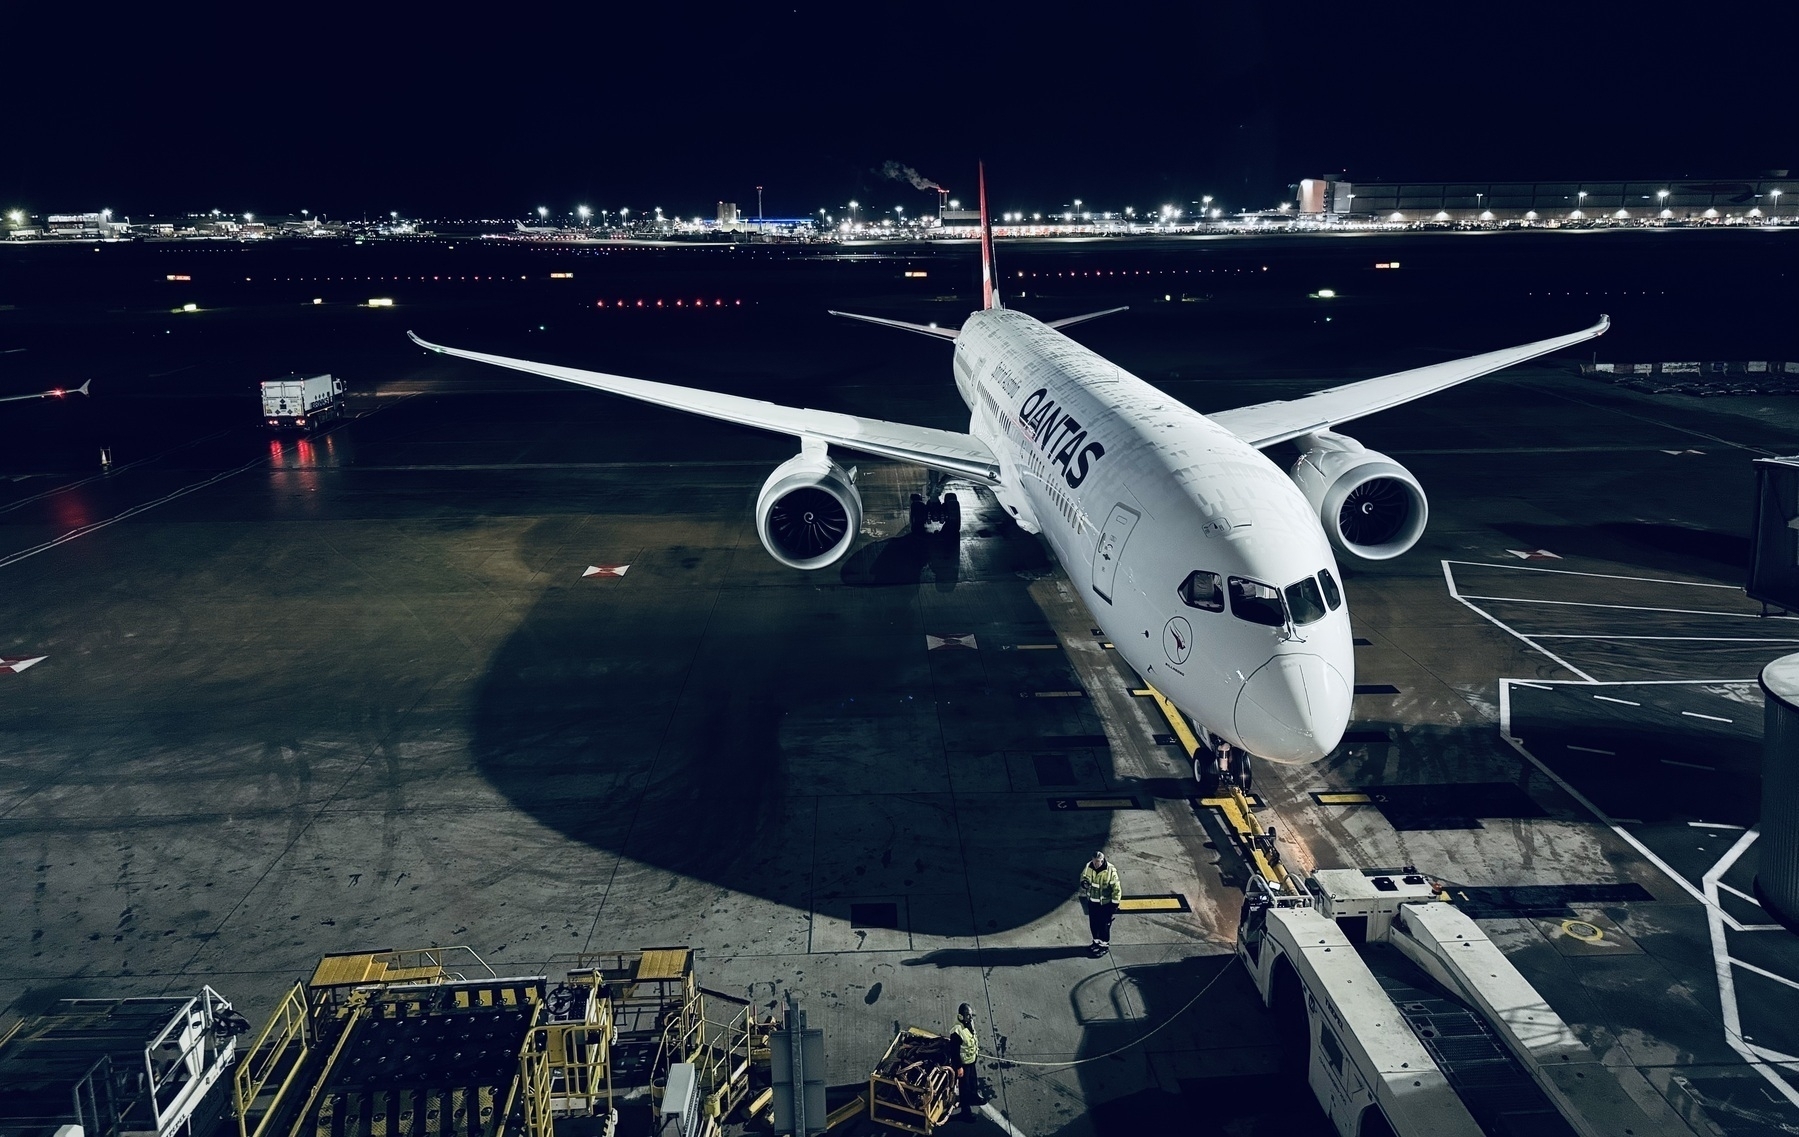 A Qantas plane in the pre-dawn darkness at Heathrow Airport.